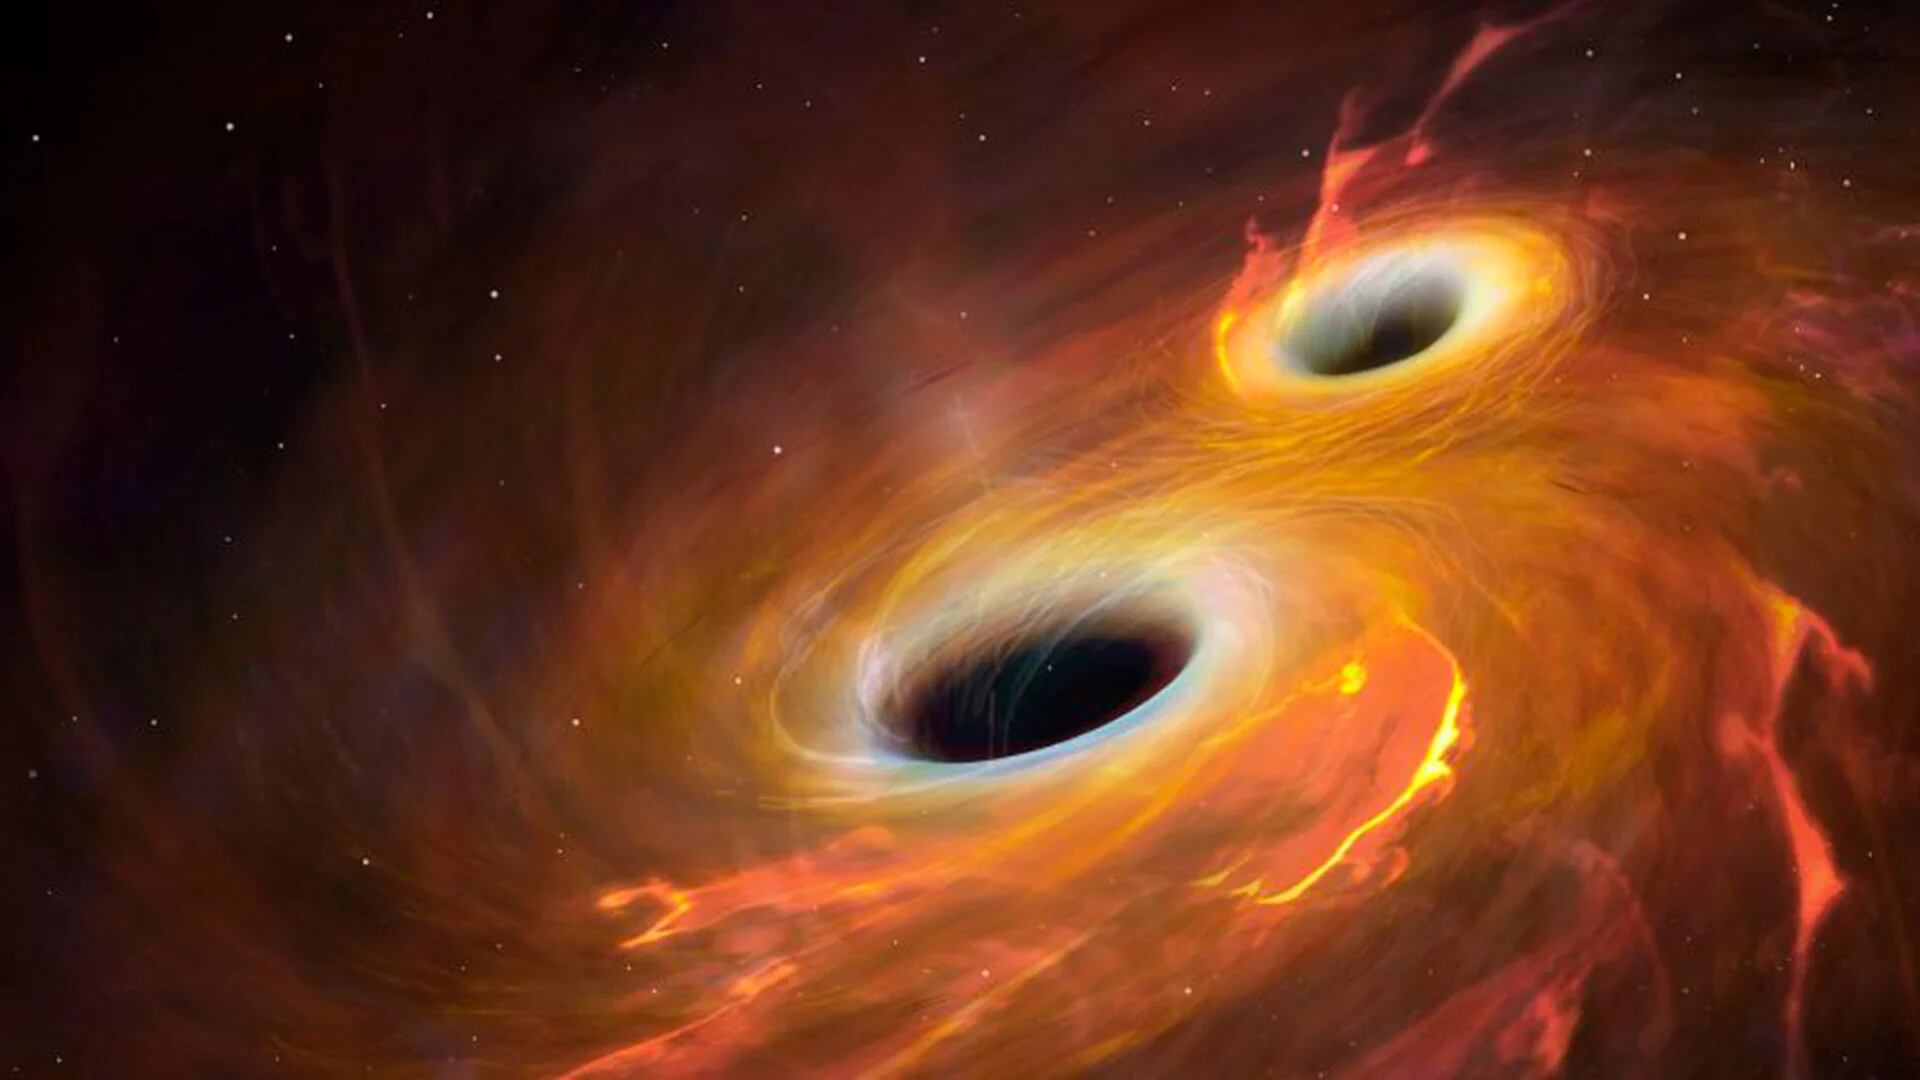 ¿Más cerca de develar el misterio? cuál es el origen de los agujeros negros supermasivos